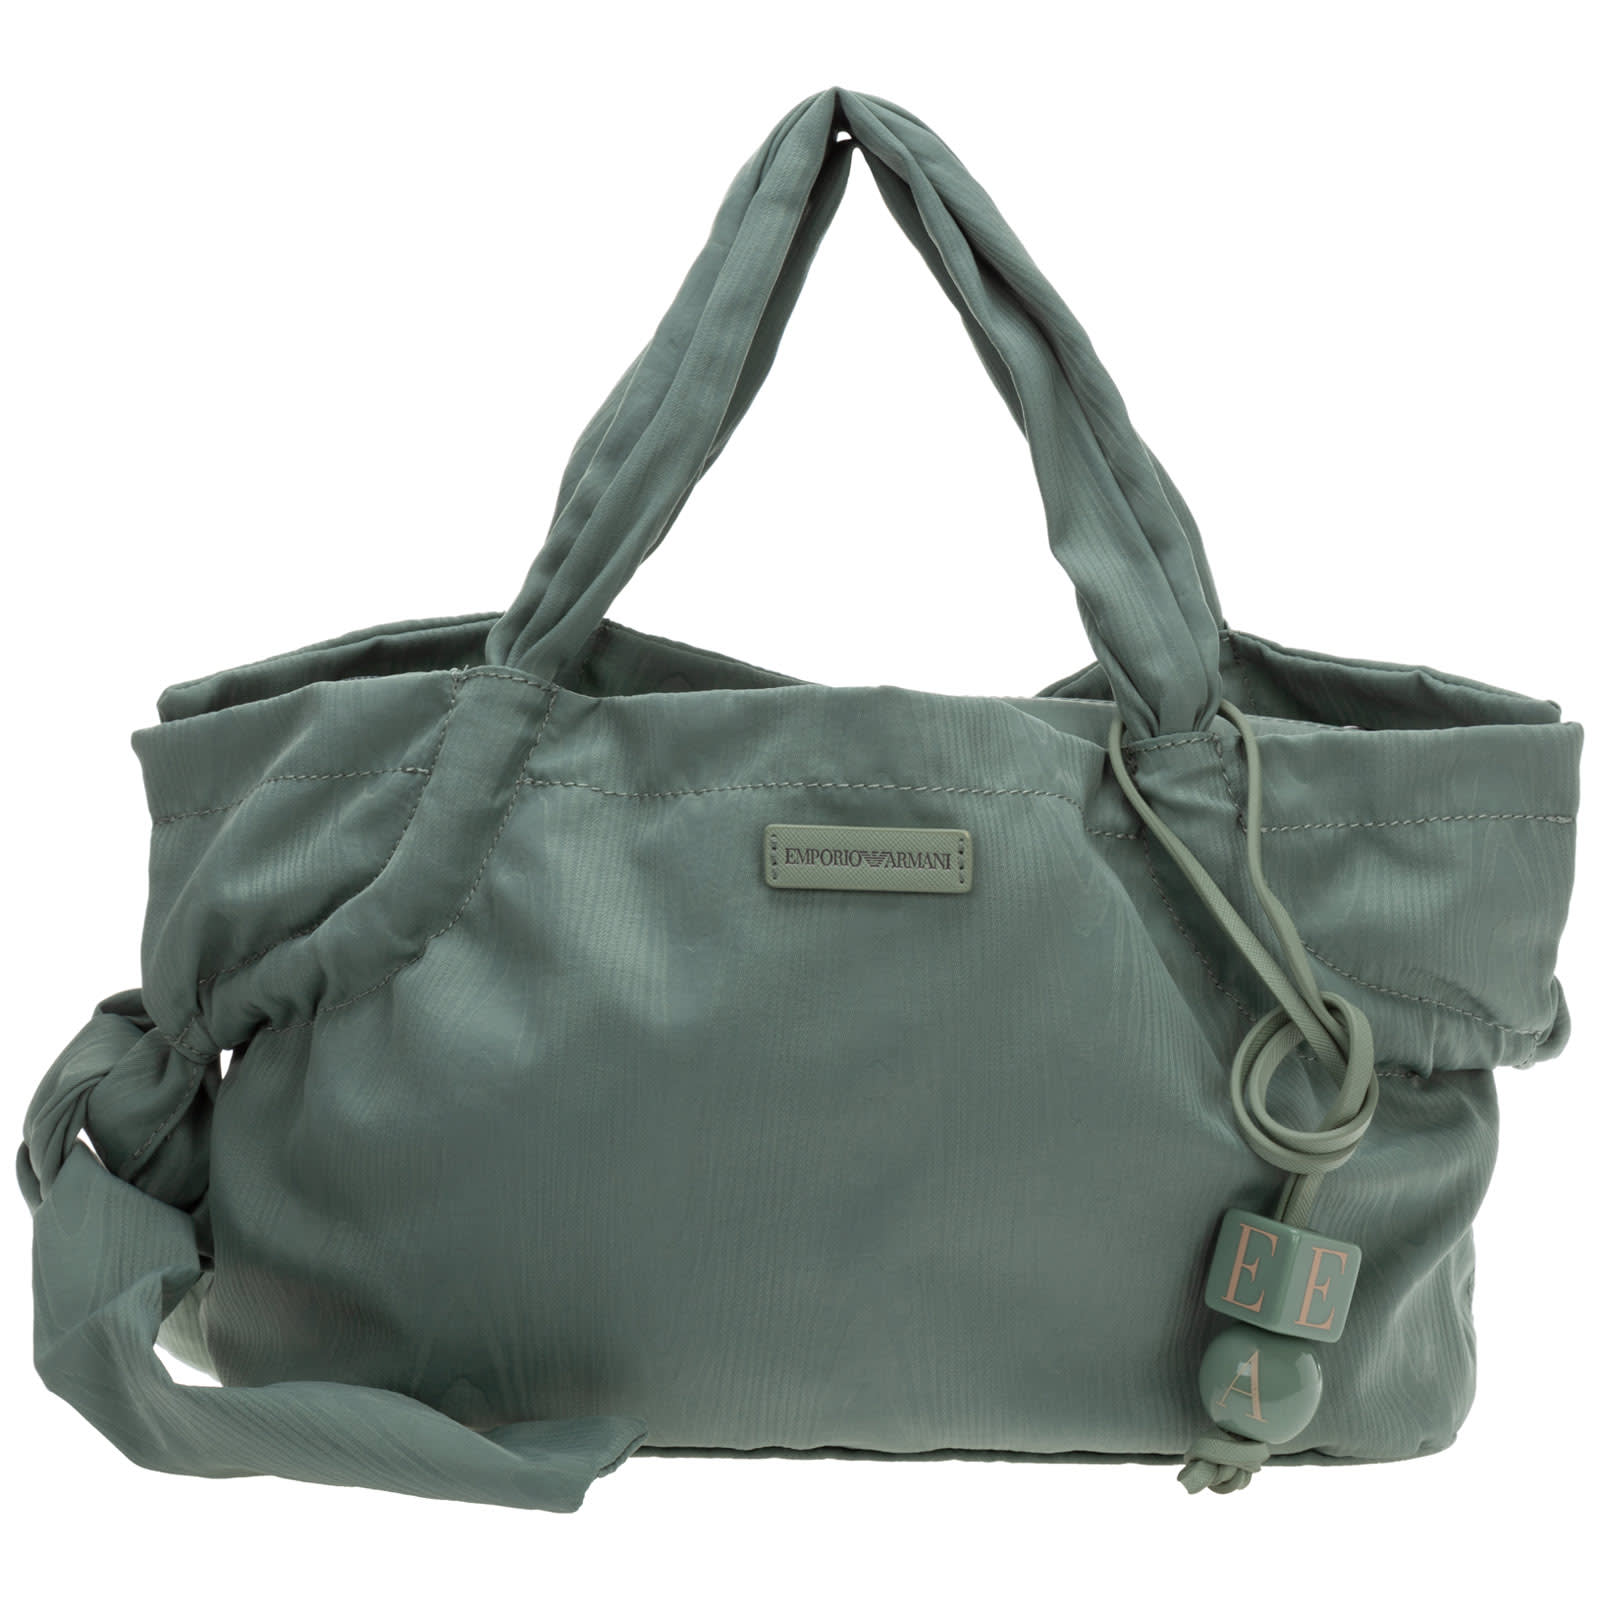 Emporio Armani Disney Handbags